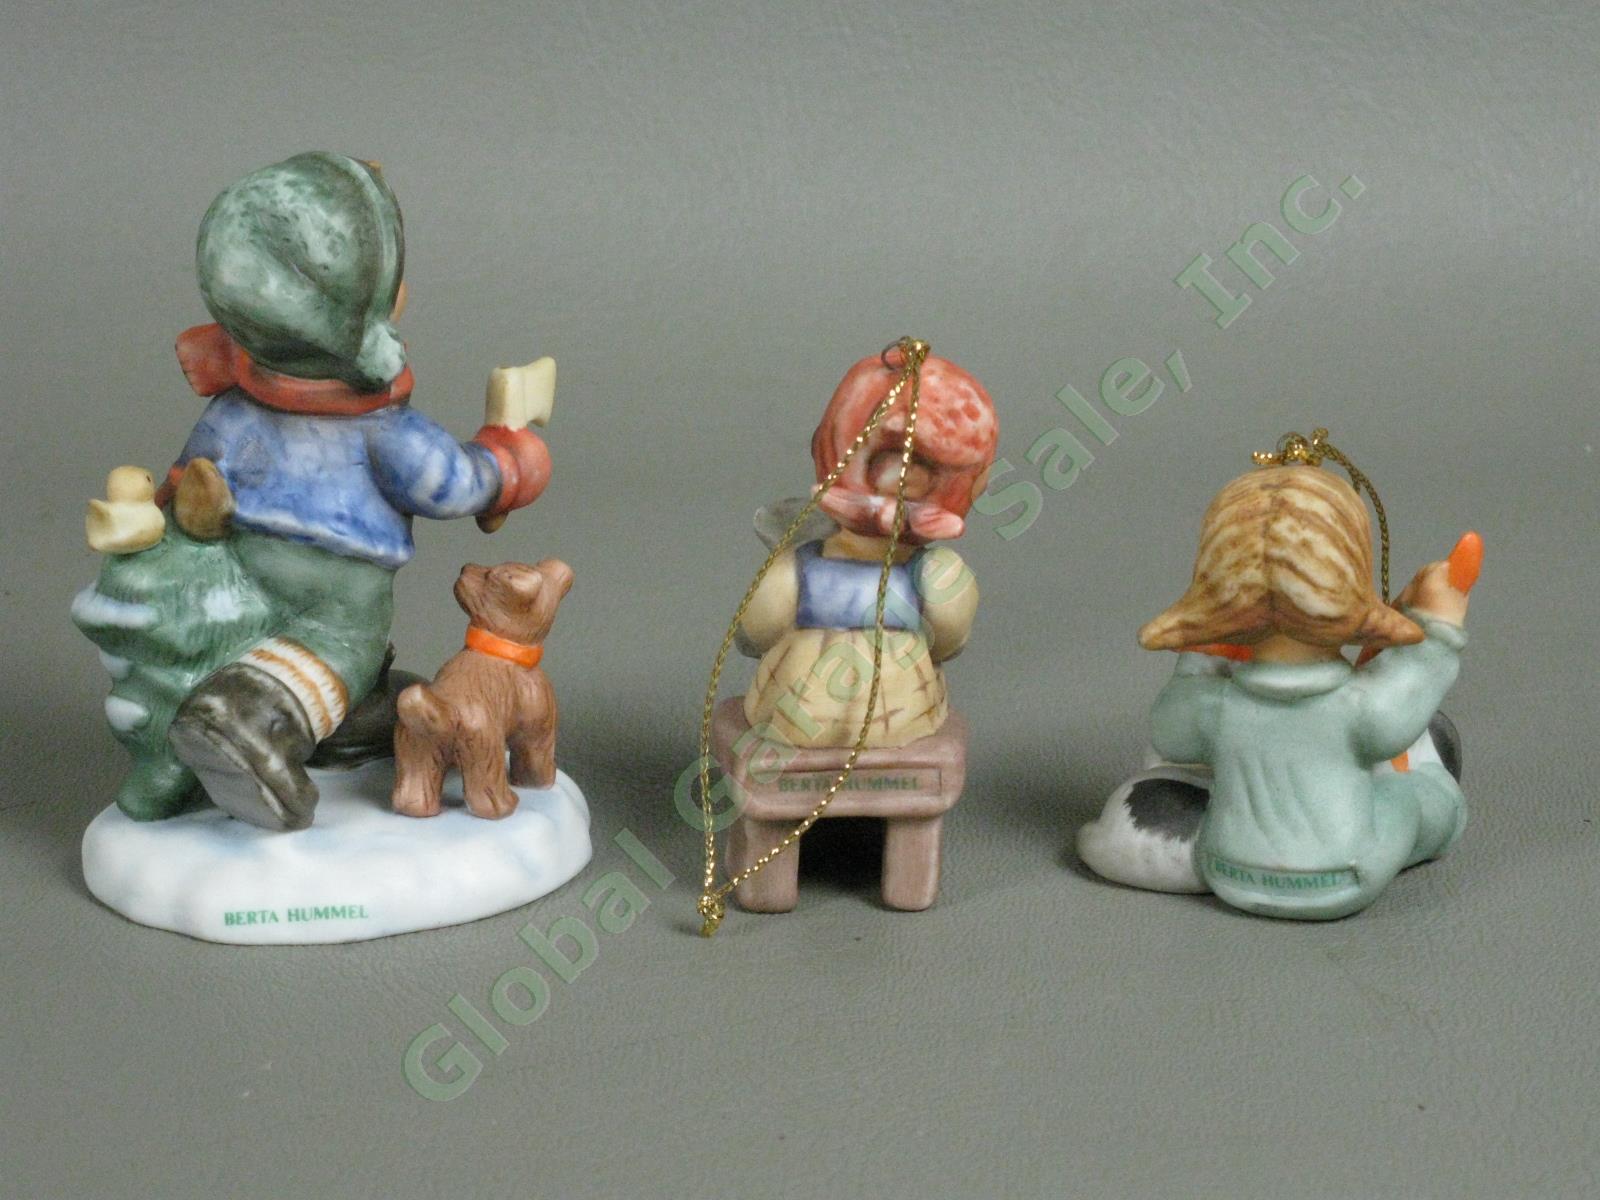 10 Vintage M.I. Hummel Goebel Figurine Lot TMK 2 3 5 6 Figurines Ornaments NR 14